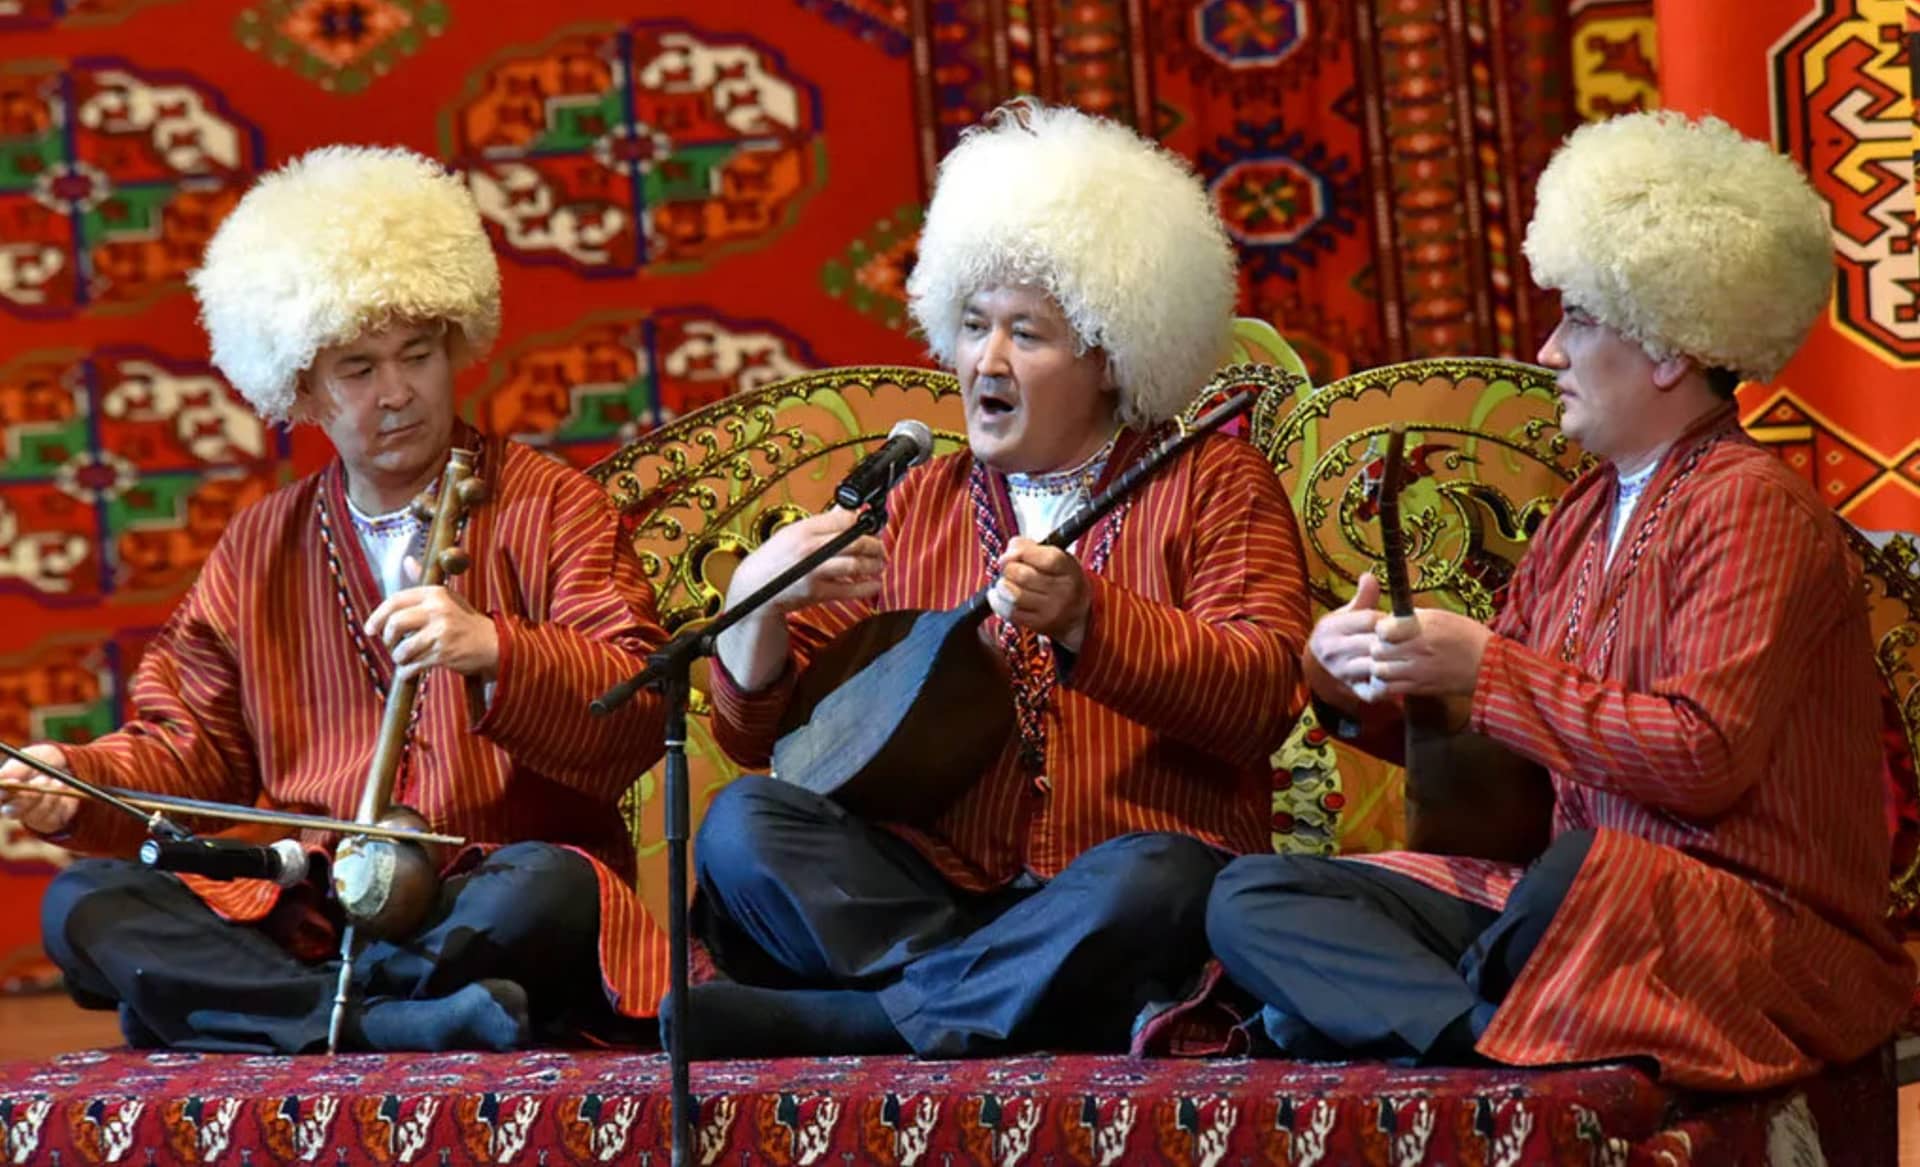 Туркмен песни. Бахши Туркменистана. Духовная культура Туркменистана дутар. Национальный музыкальный инструмент Туркменистана дутар. Народные бахши Туркменистана.